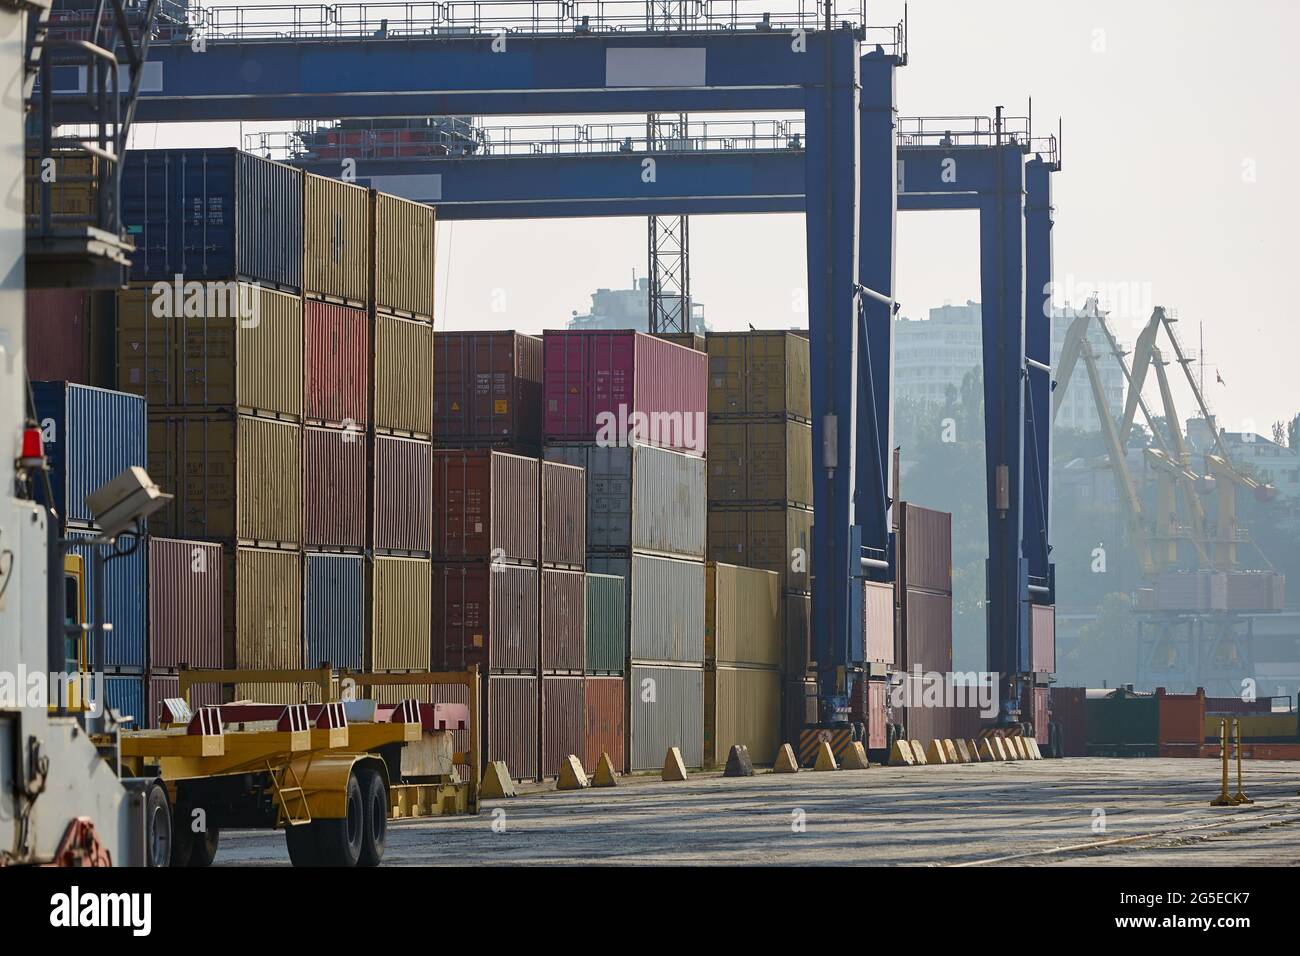 Industriehafen mit Containern. Containerstapel am Seehafen-Containerterminal Stockfoto